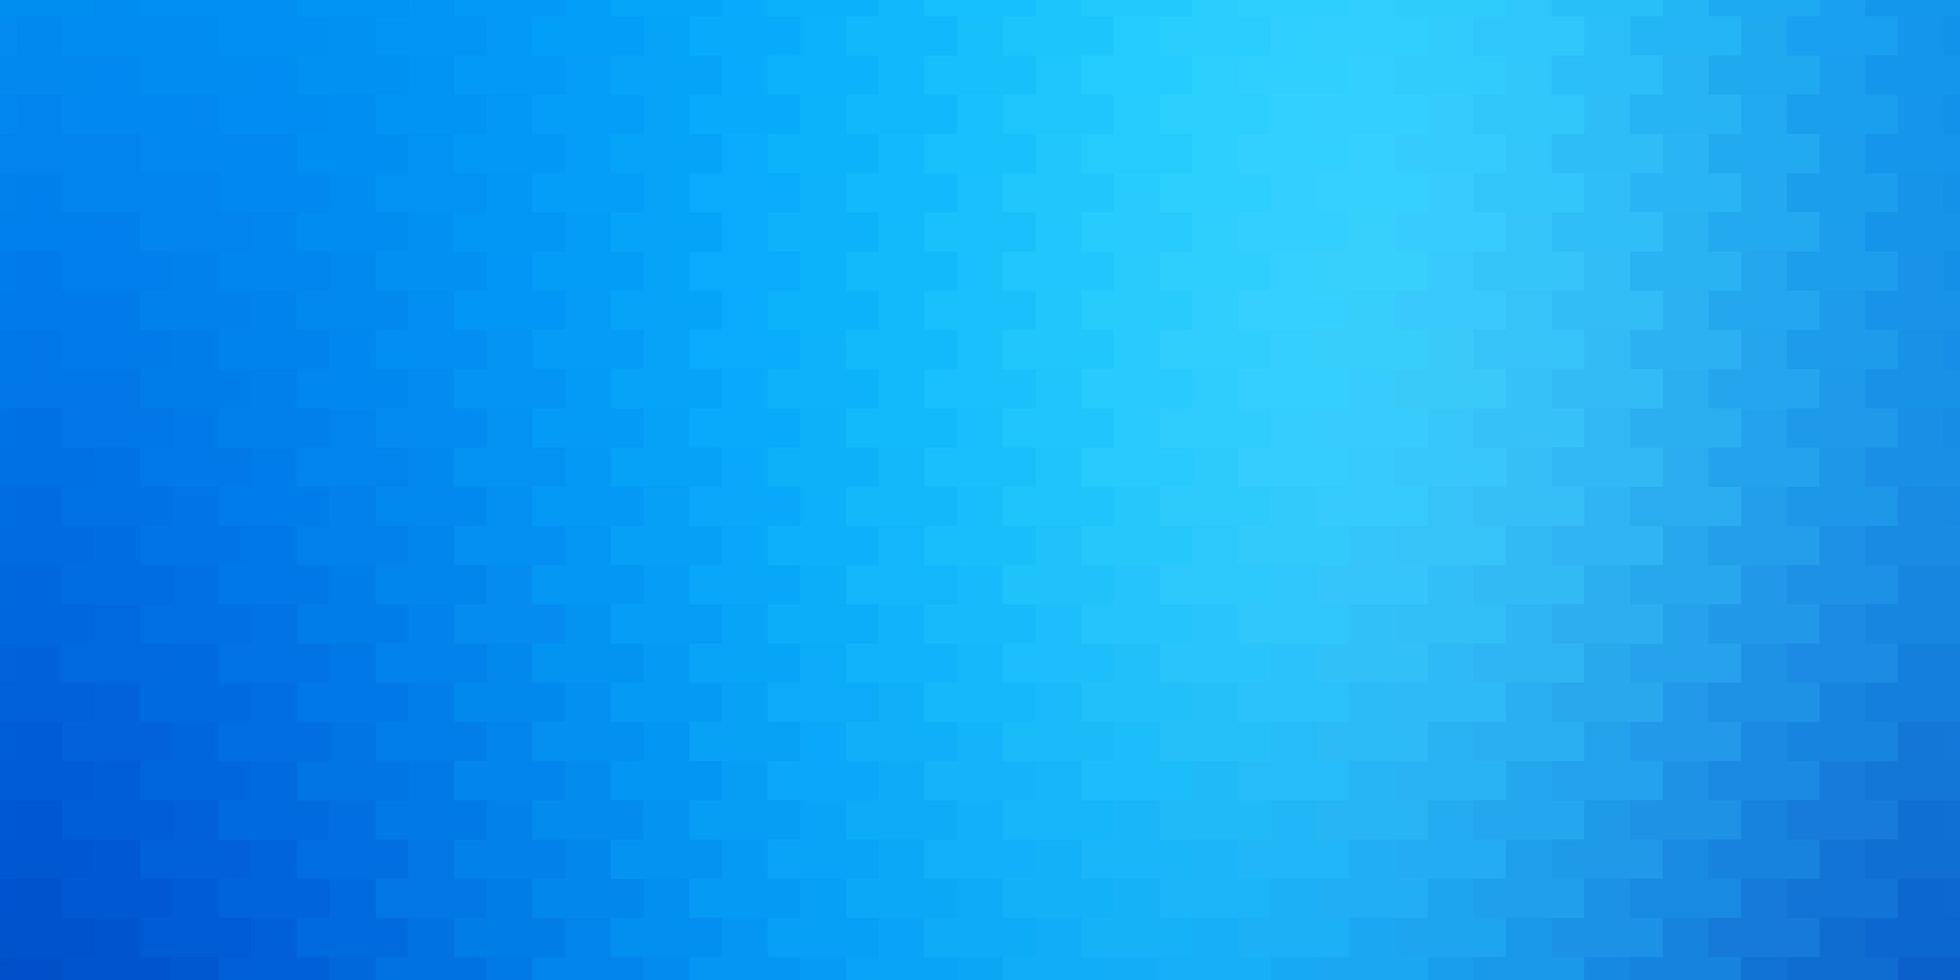 textura de vetor azul claro em retângulos de estilo retangular com gradiente colorido em design de fundo abstrato para a promoção de seus negócios